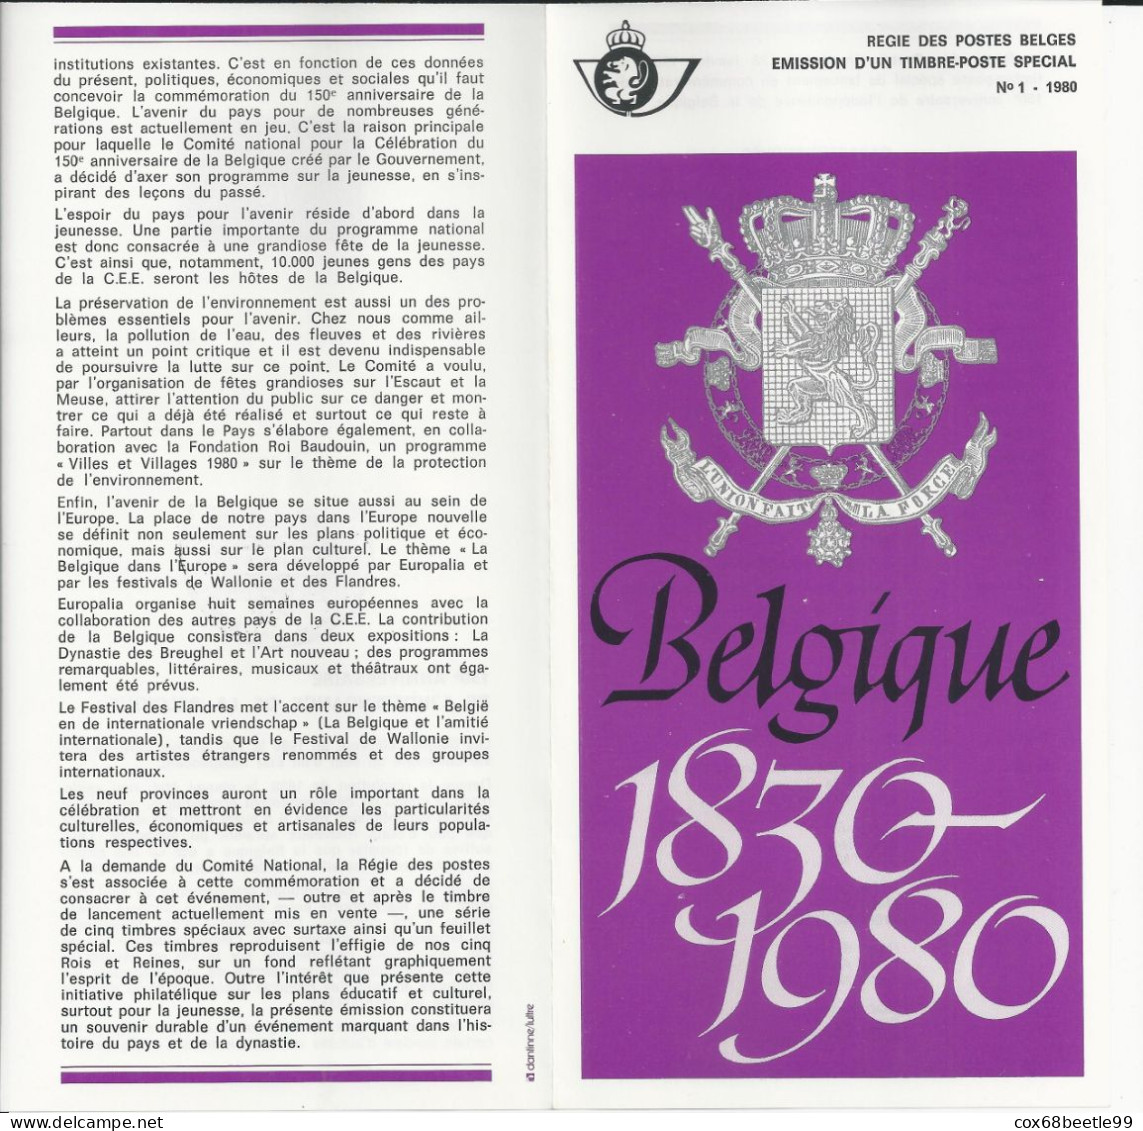 Belgique Feuillet De La Poste 1980-1 FDC Cob 1961 150 Ans 1930-1980 26-01-1980 BRUXELLES - Post-Faltblätter